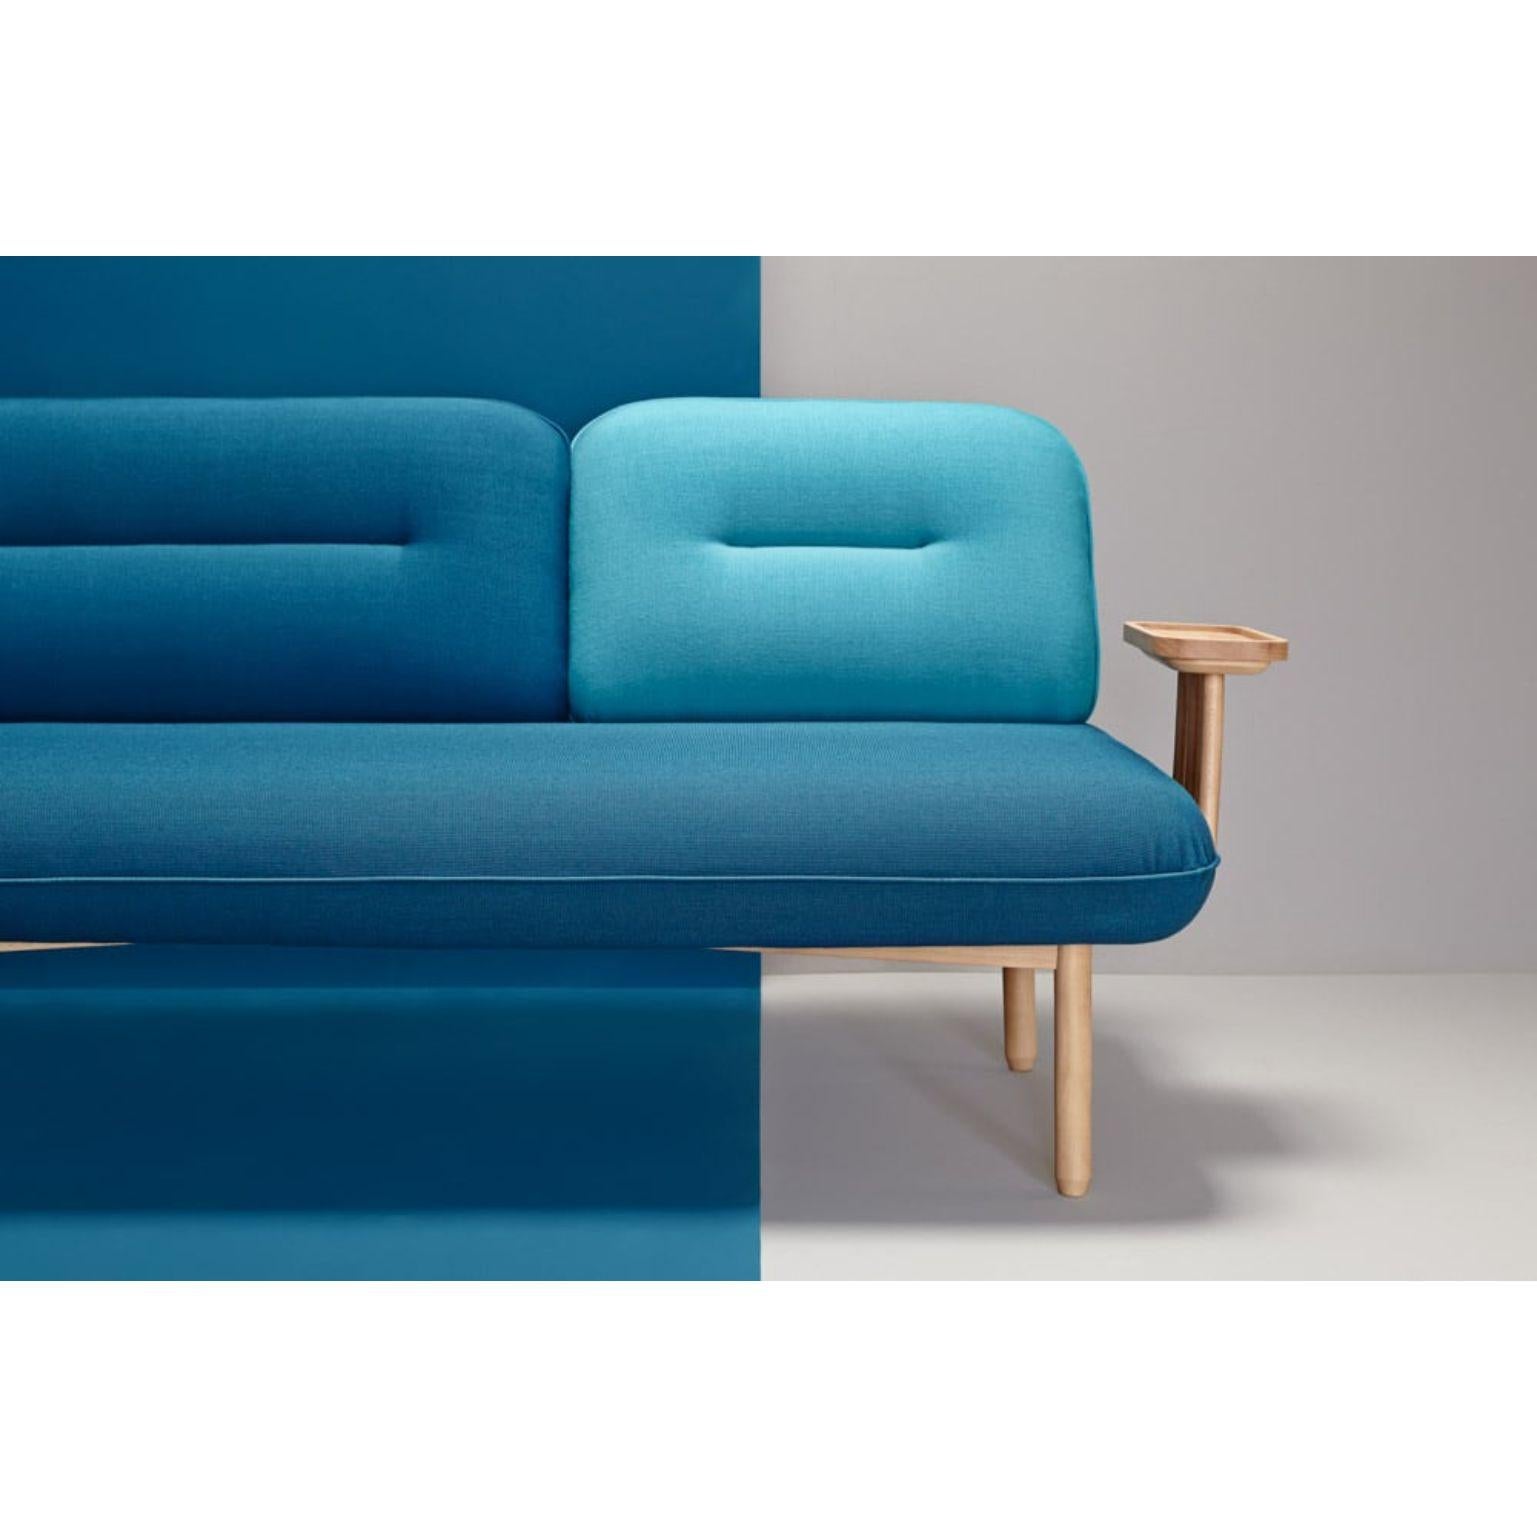 Spanish Blue Cosmo Sofa by La Selva